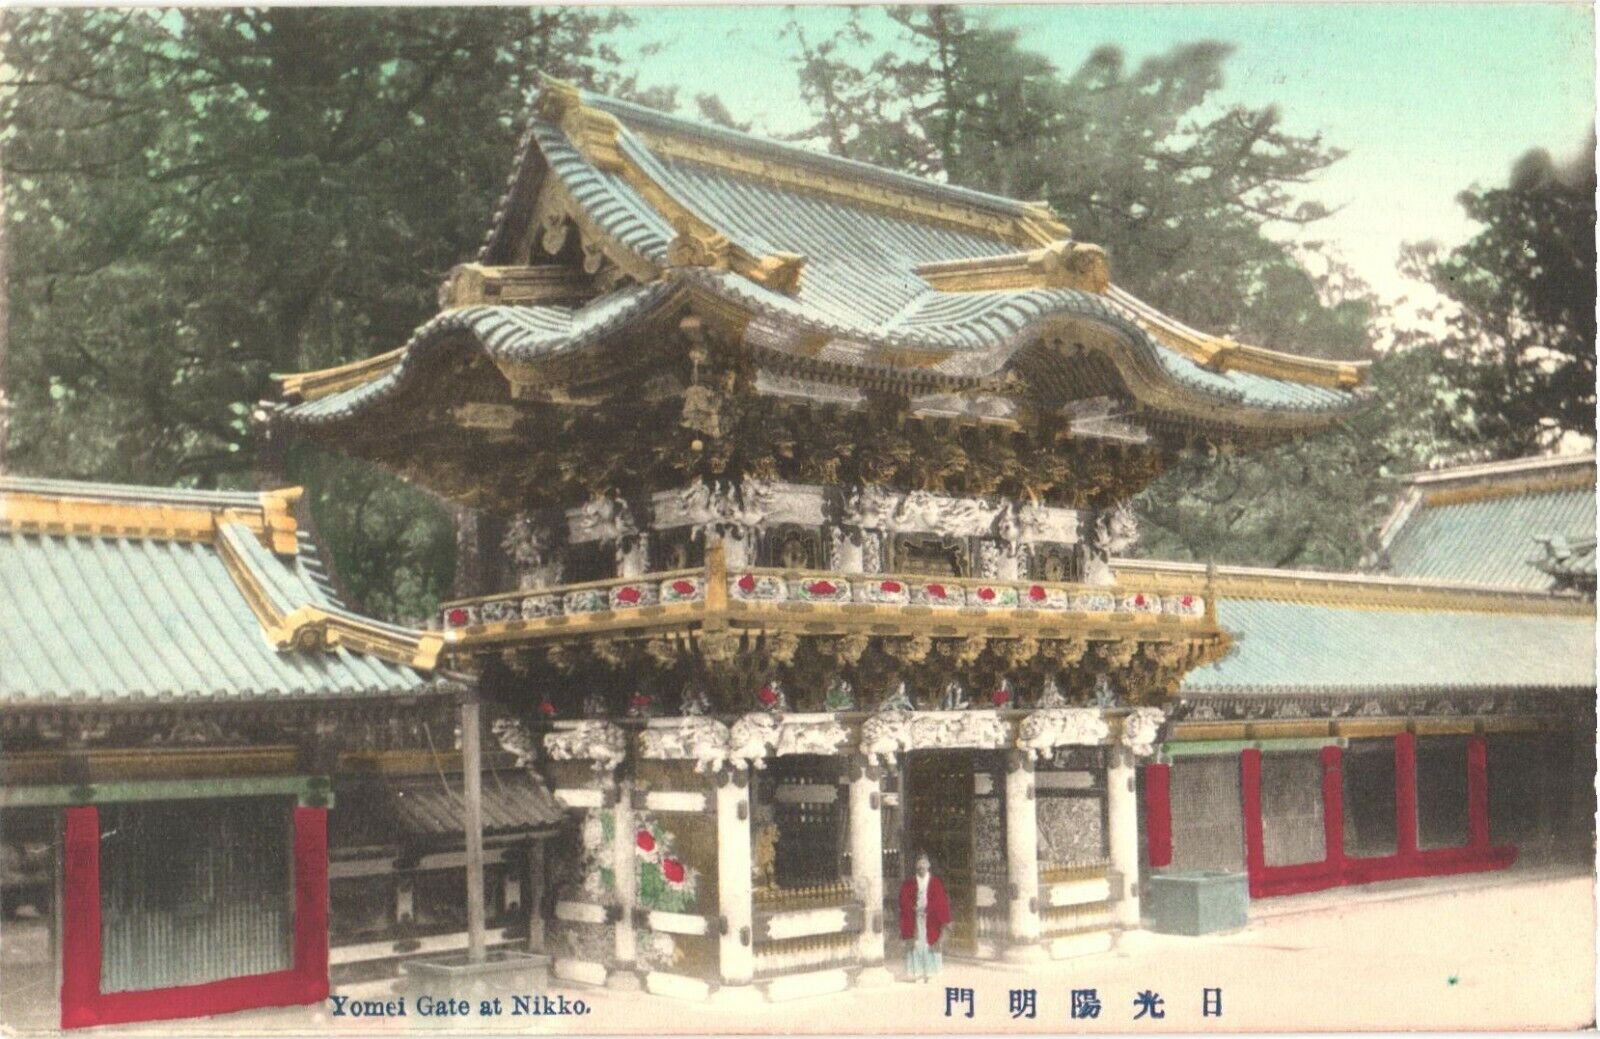 Yomei Gate At Nikkō Tōshō-gū, Nikkō, Tochigi Prefecture, Japan Postcard